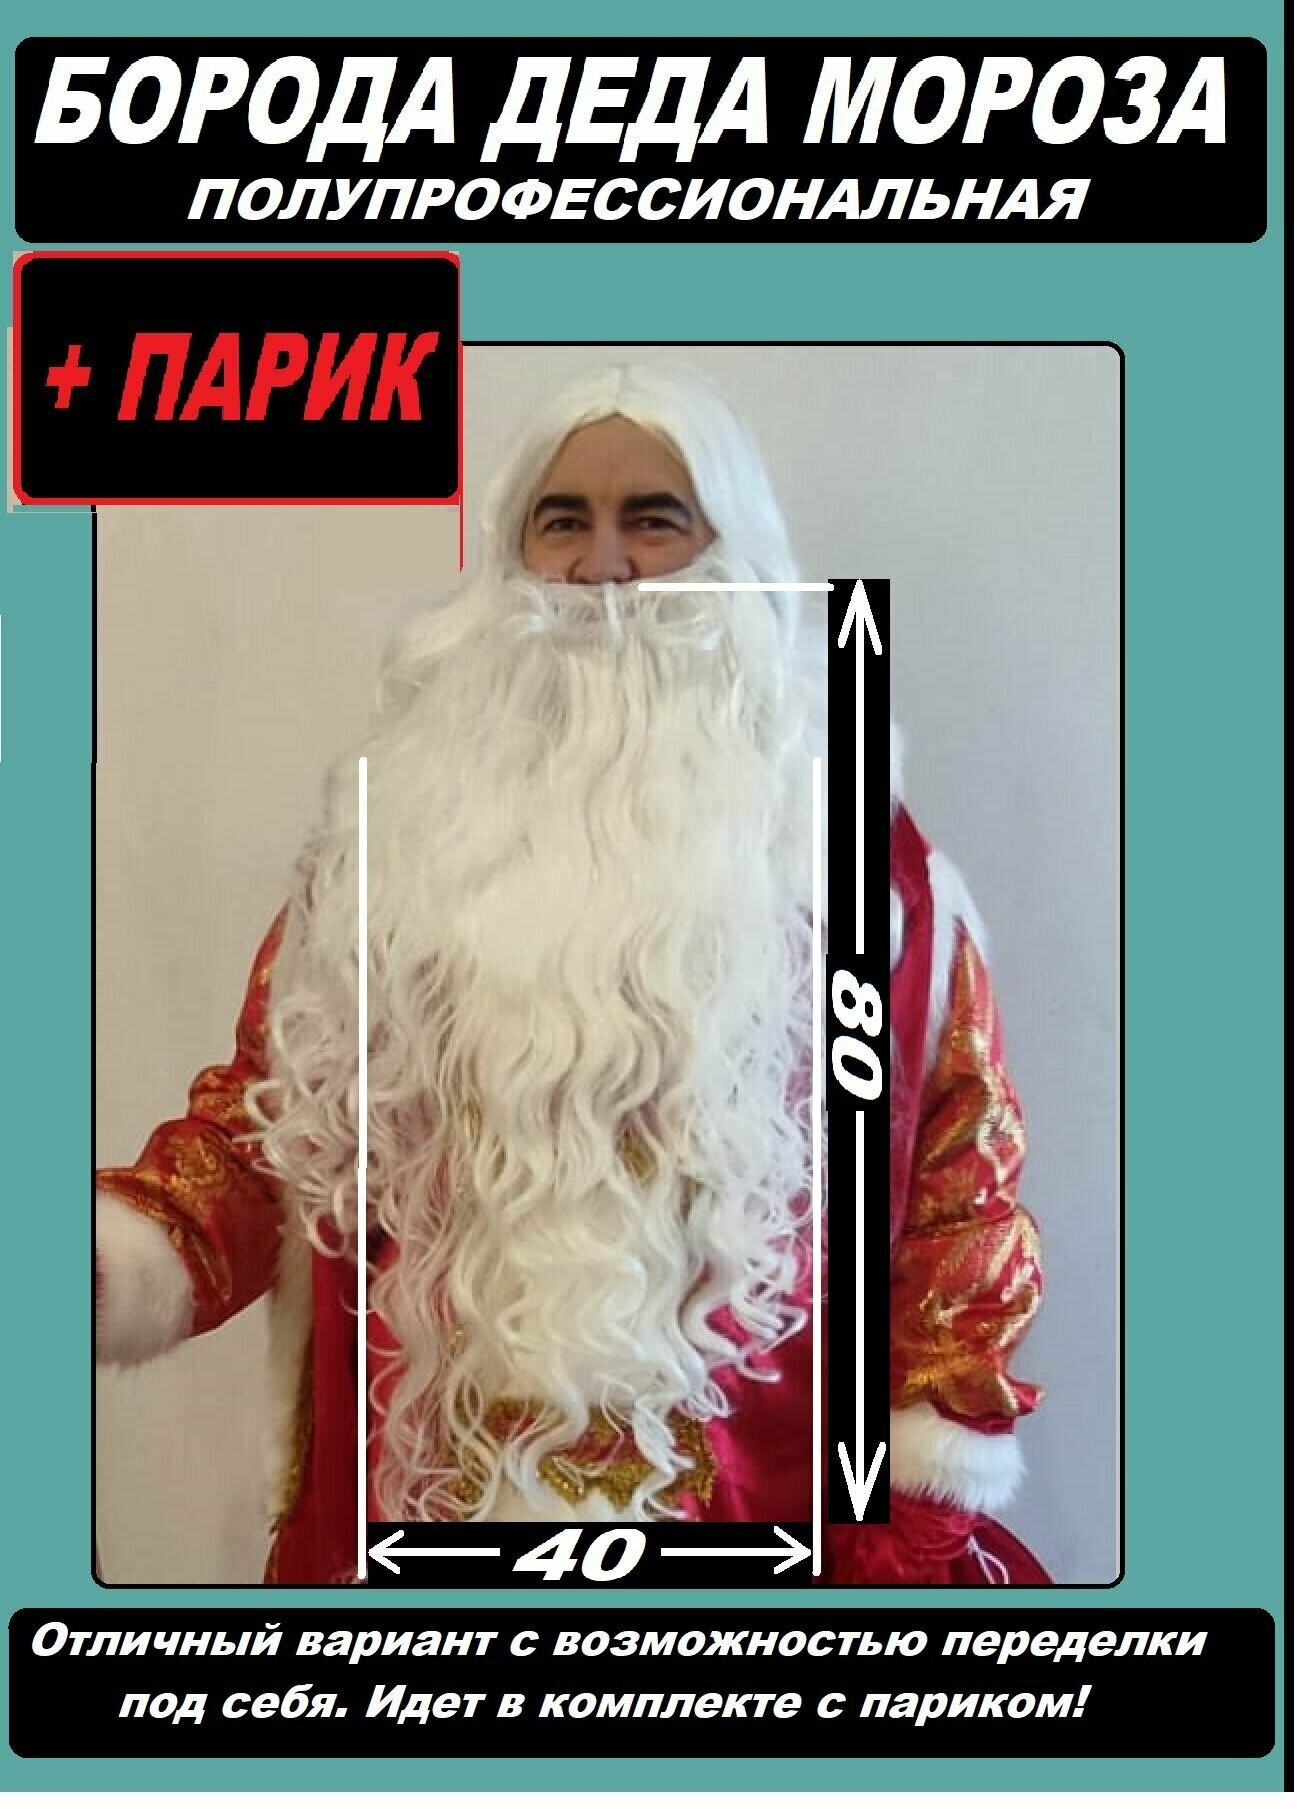 Борода Деда Мороза в наборе с париком, полупрофессиональный вариант с возможностью переделки под себя